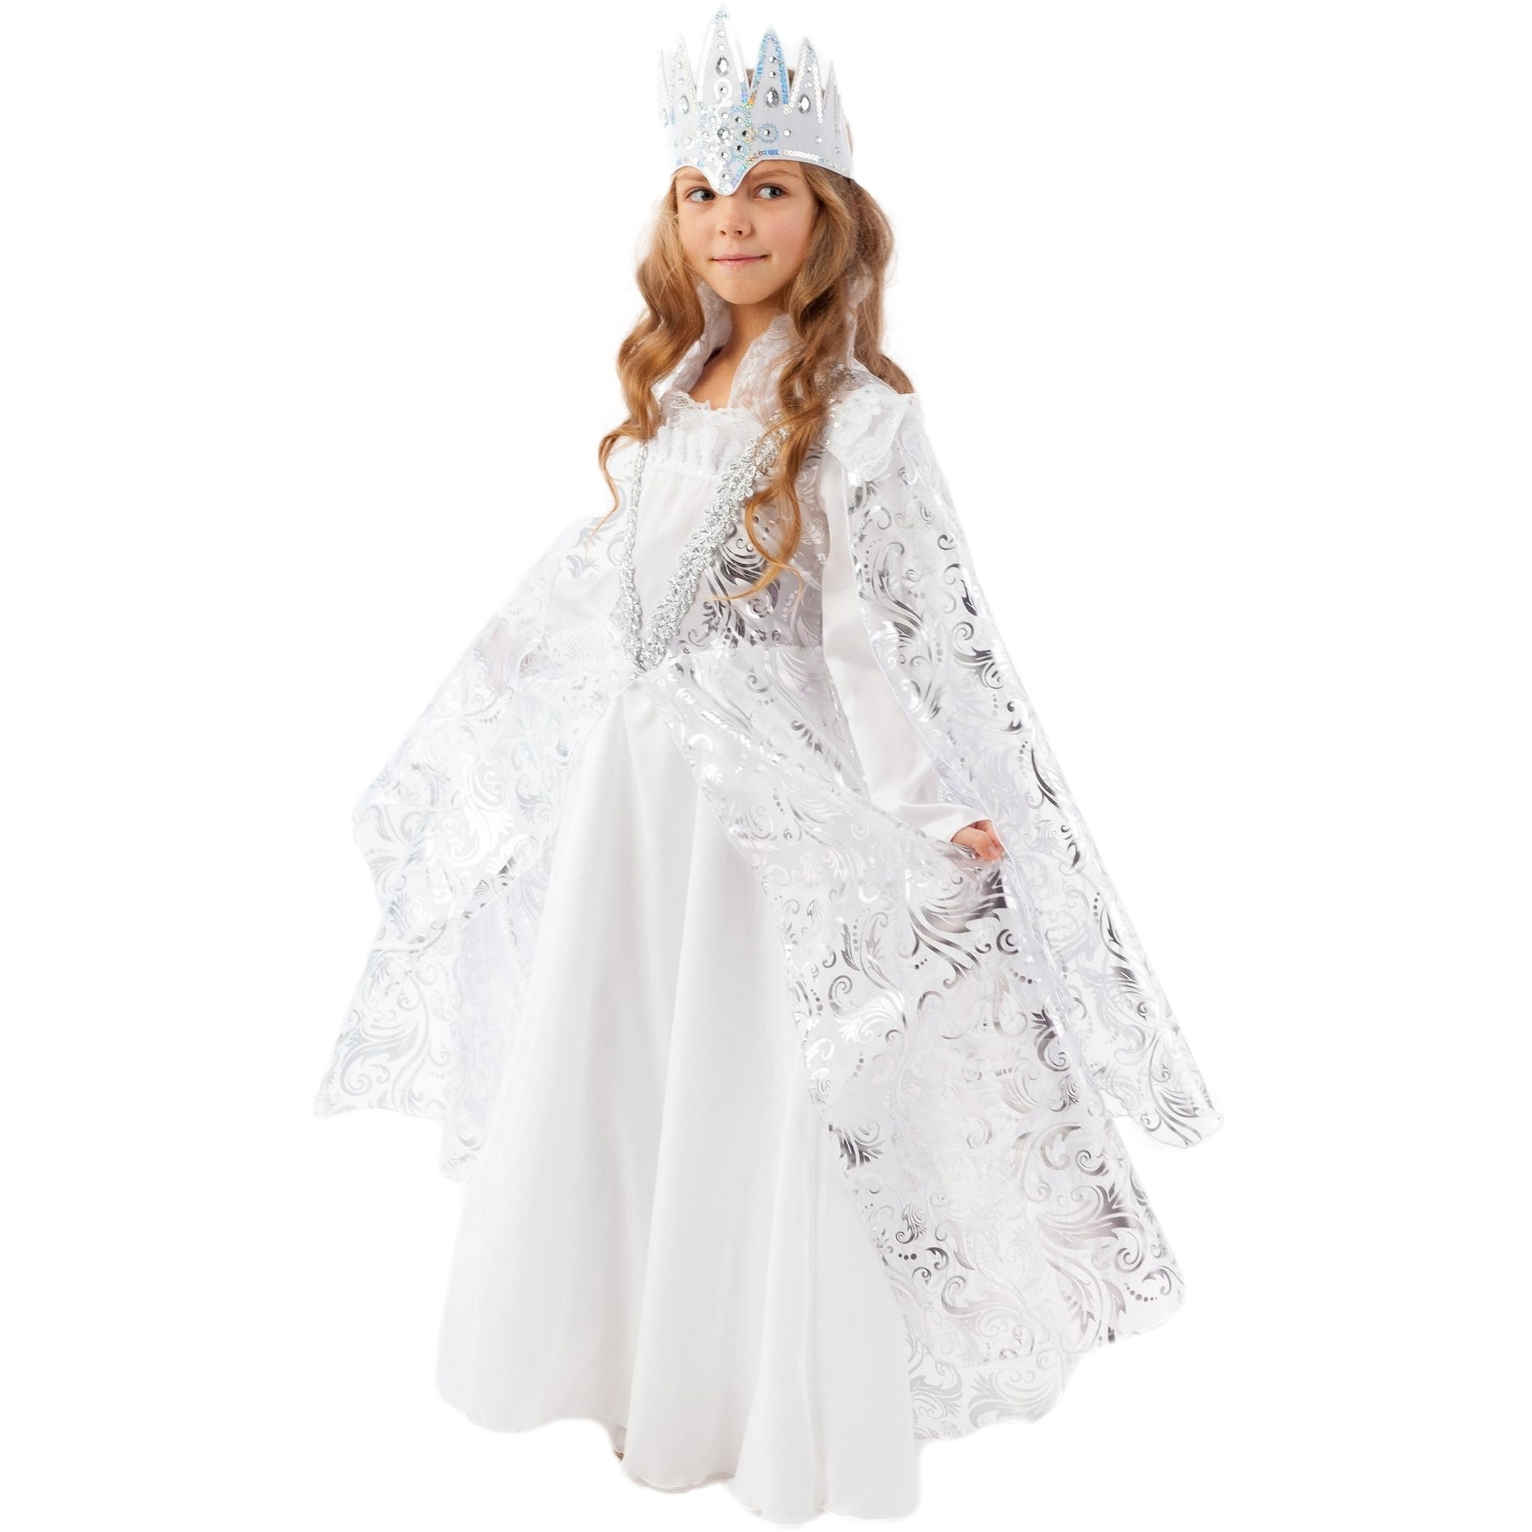 Карнавальный костюм "Снежная королева" (платье, корона) размер 122-64